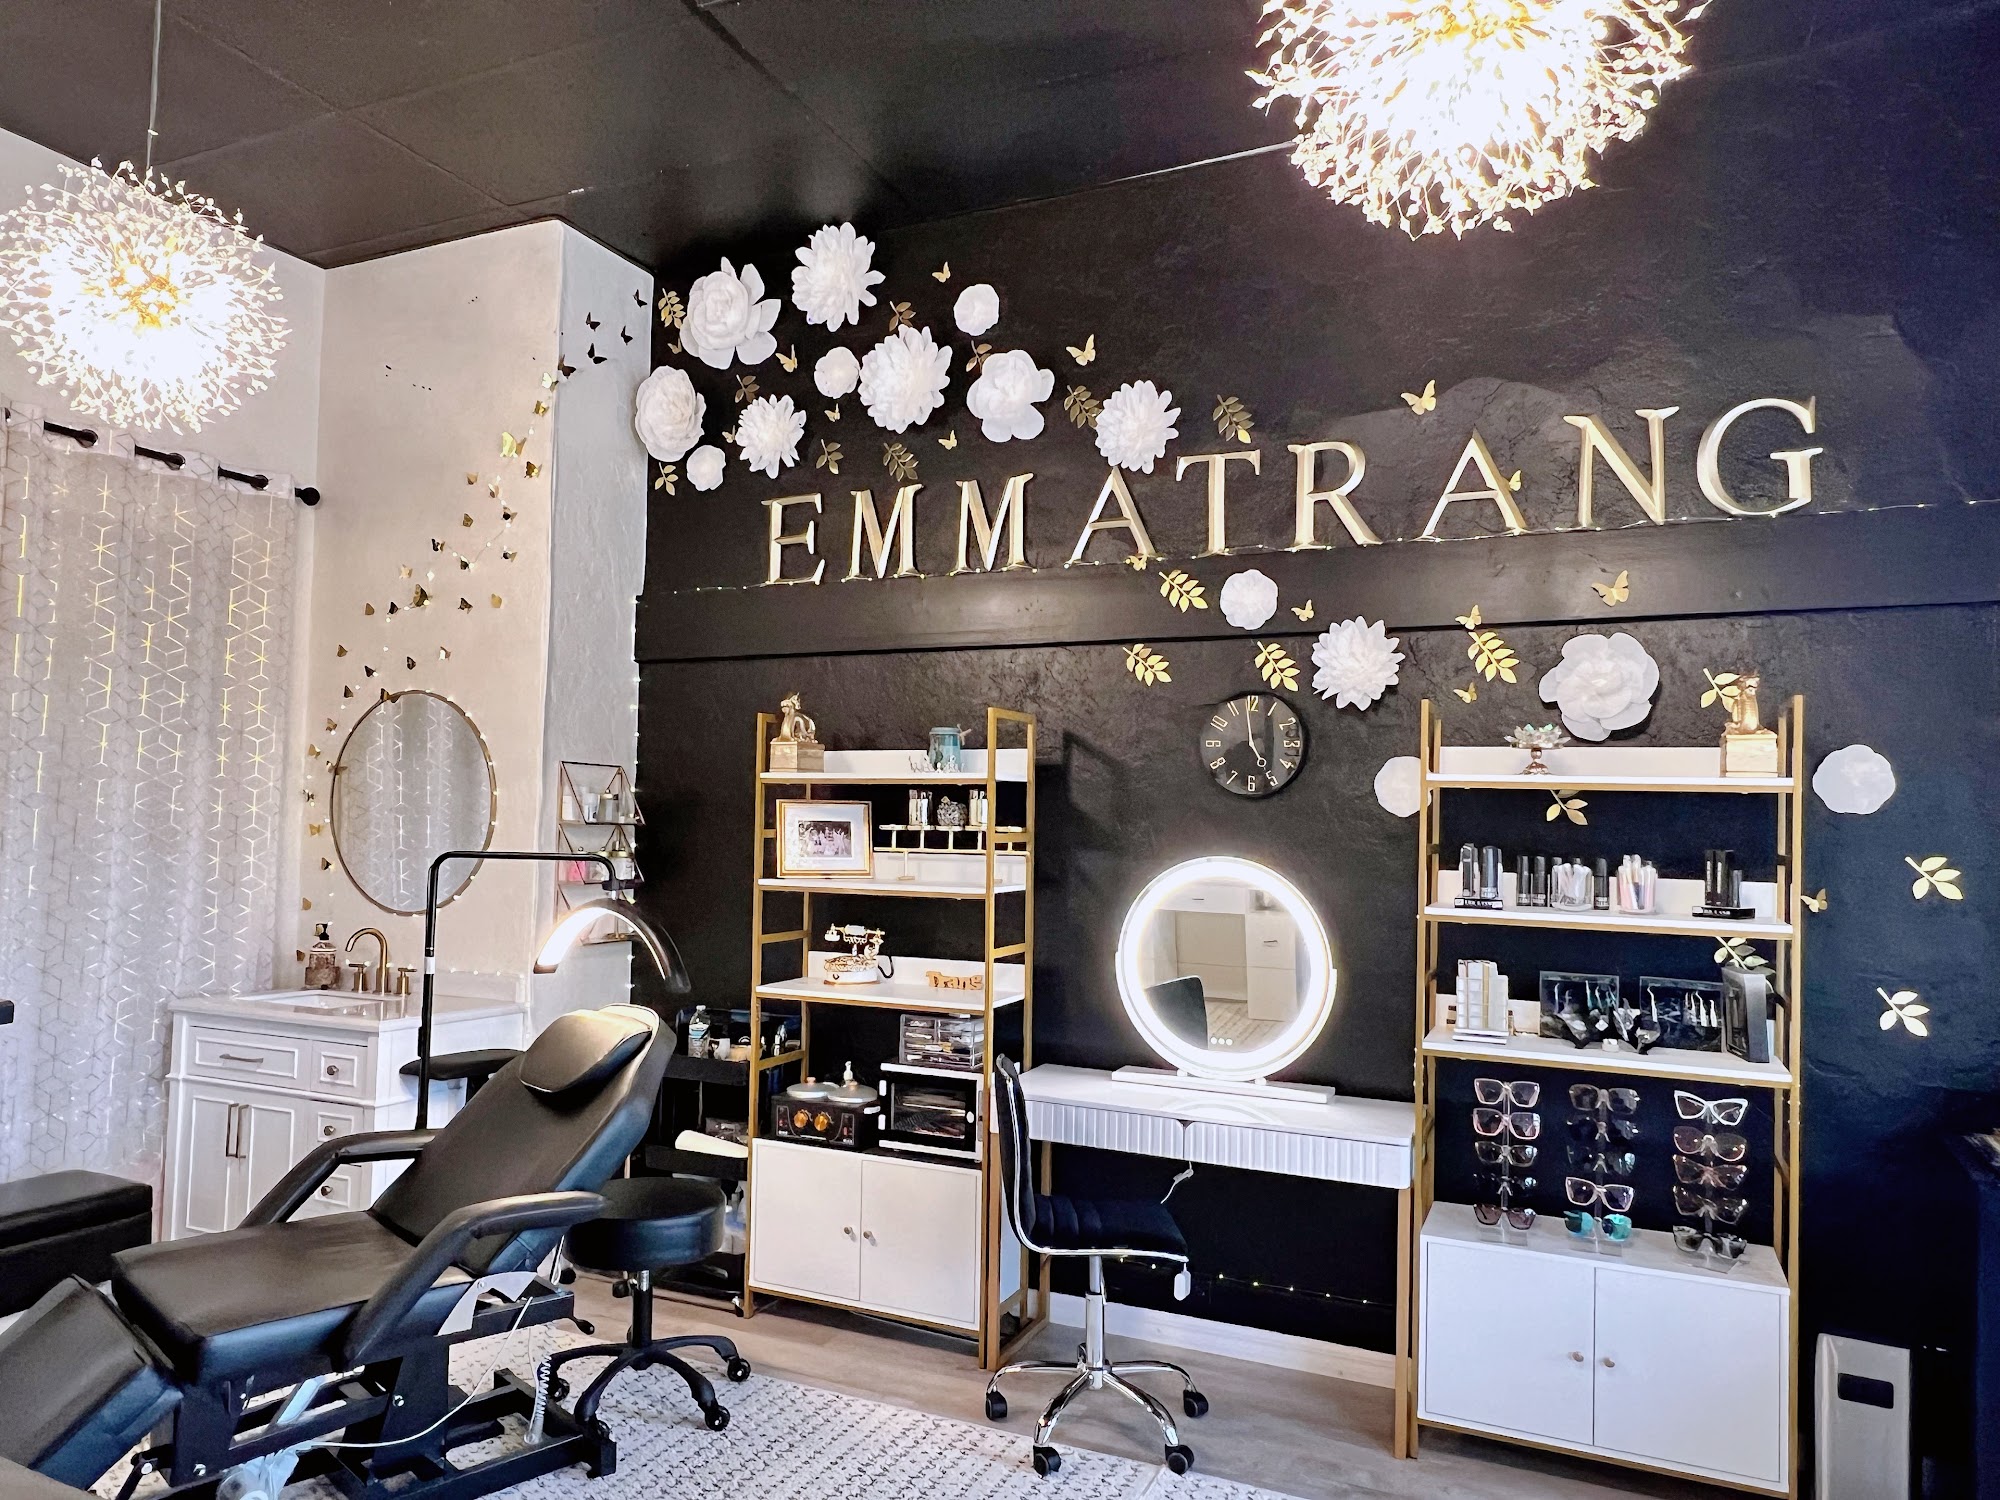 EmmaTrang Beauty Lounge